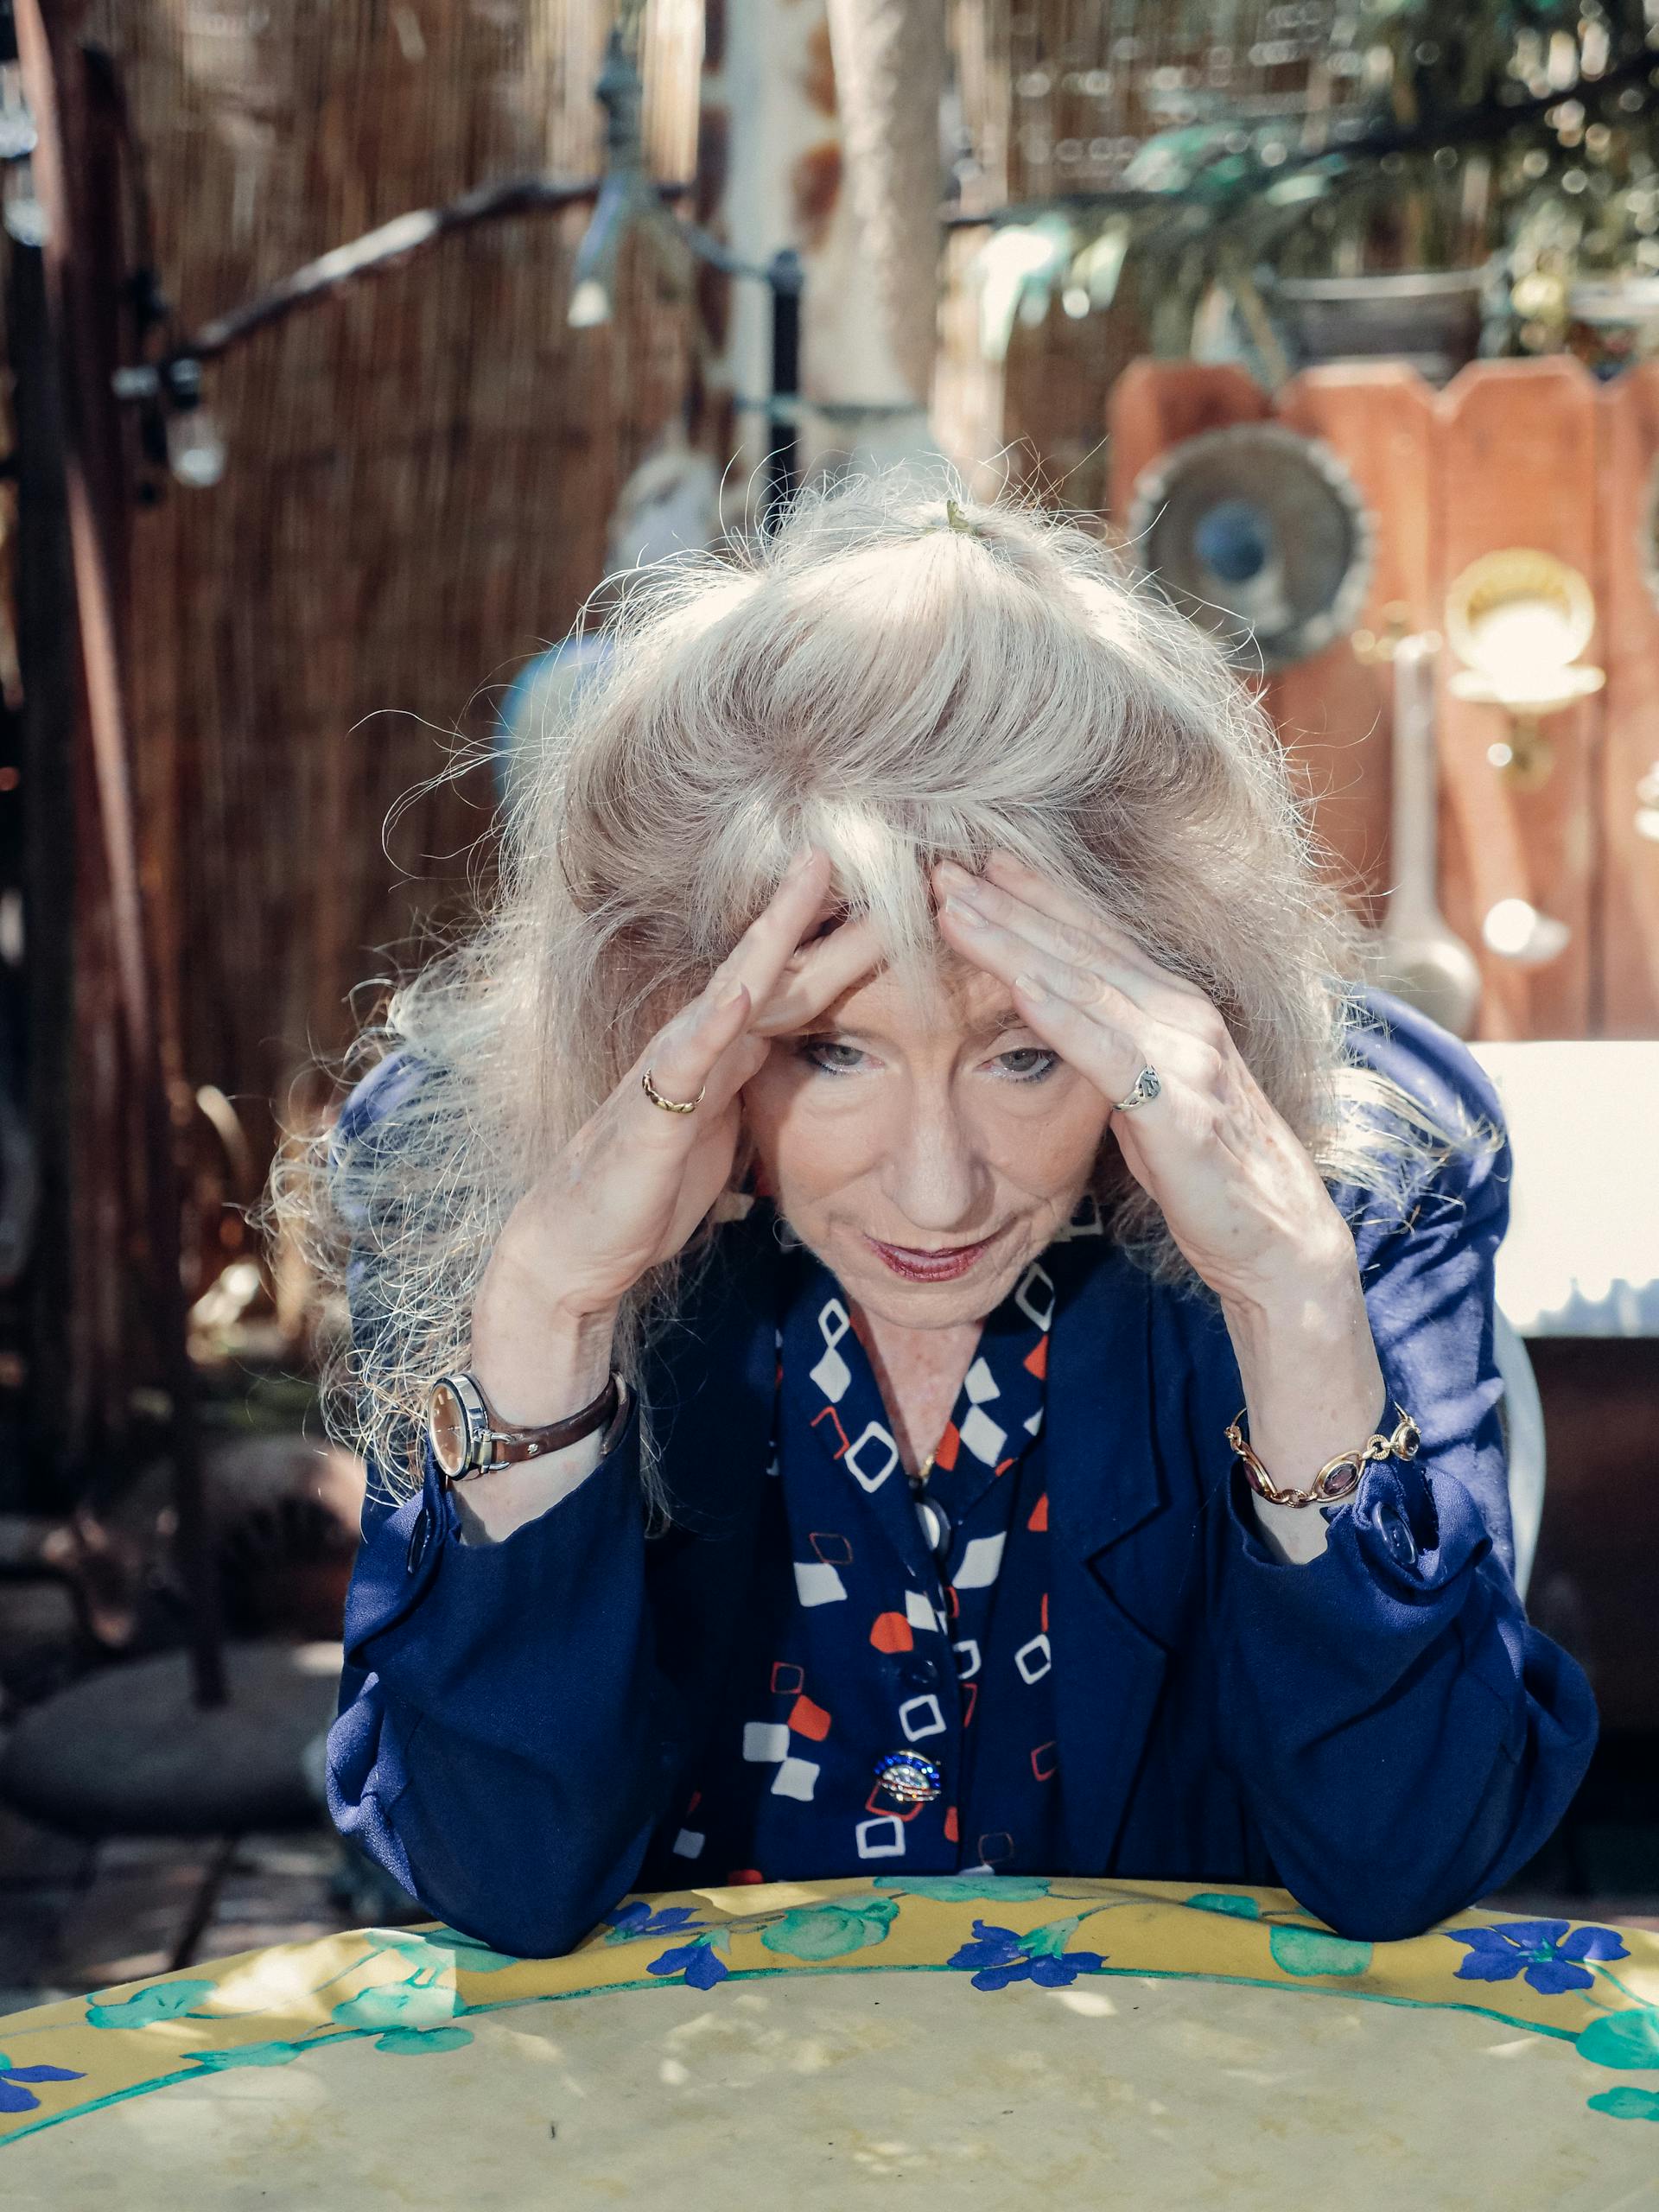 An elderly woman resting her head in her hands | Source: Pexels